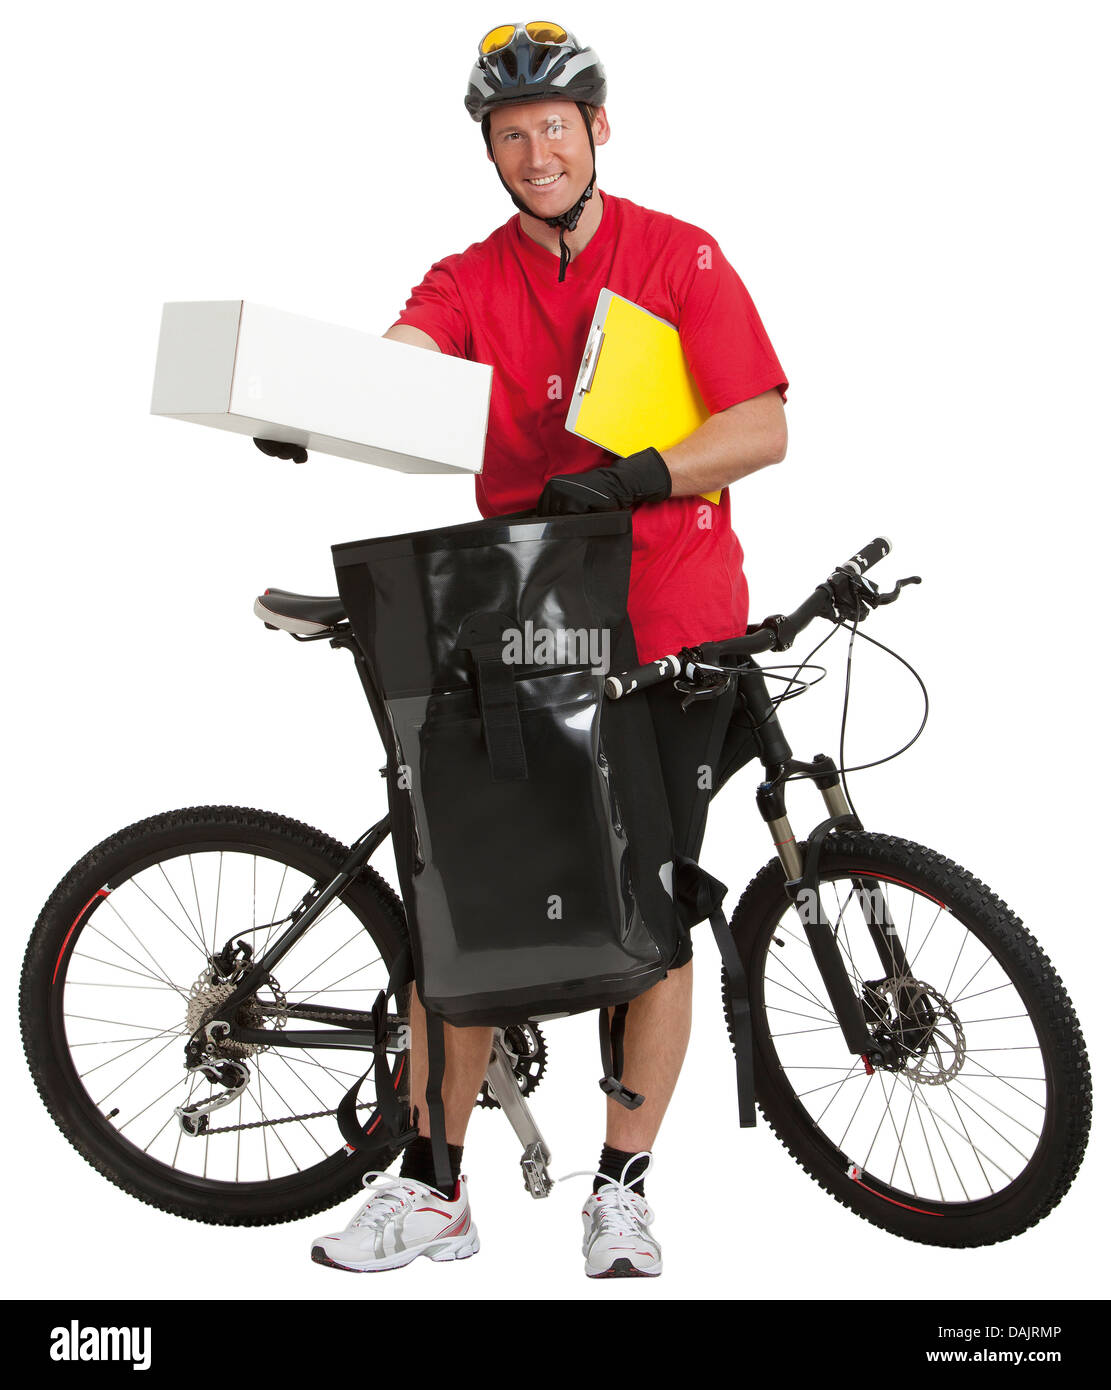 Portrait de l'homme de courrier avec vélo et sac à dos, smiling Banque D'Images